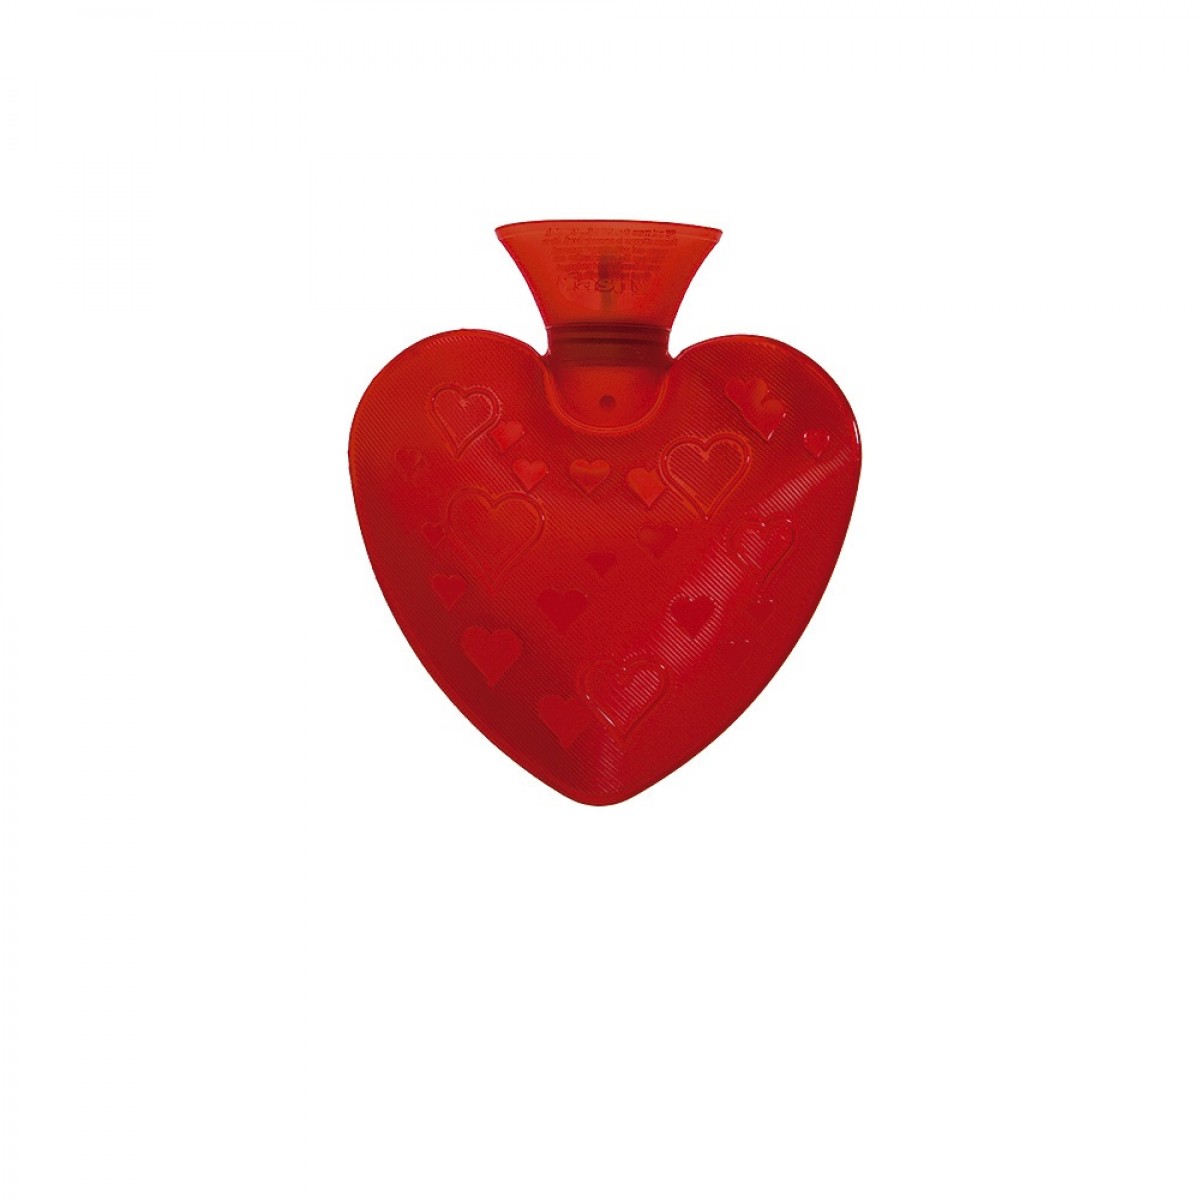 grote Oceaan Picasso geestelijke gezondheid Fashy kruik 0.7 liter In de vorm van een hart